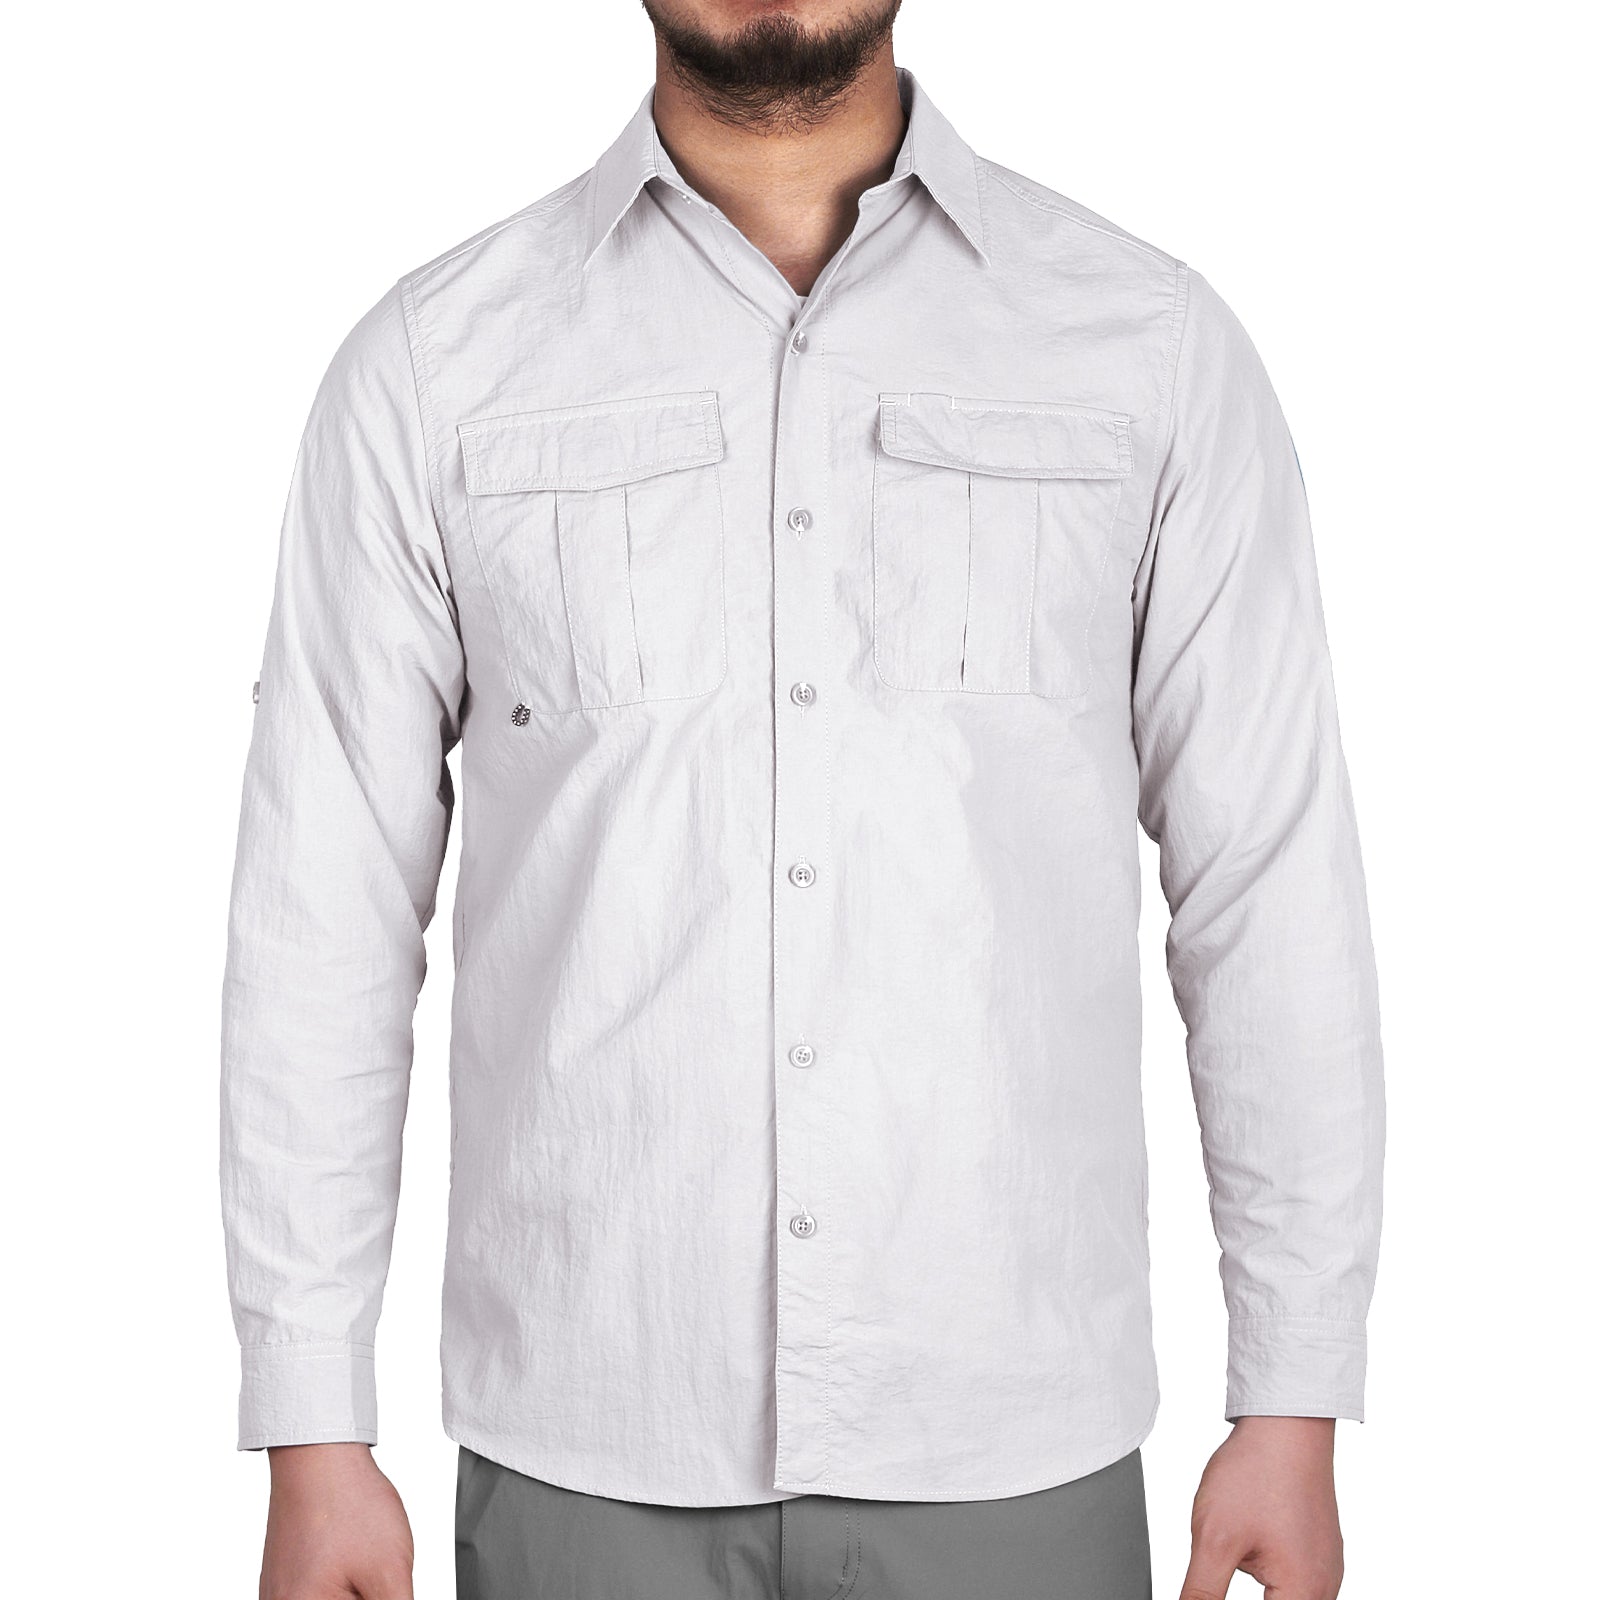  Runhit Camiseta de protección solar para hombre, protección  solar UPF 50+, manga larga, protección solar UV, secado rápido, SPF para